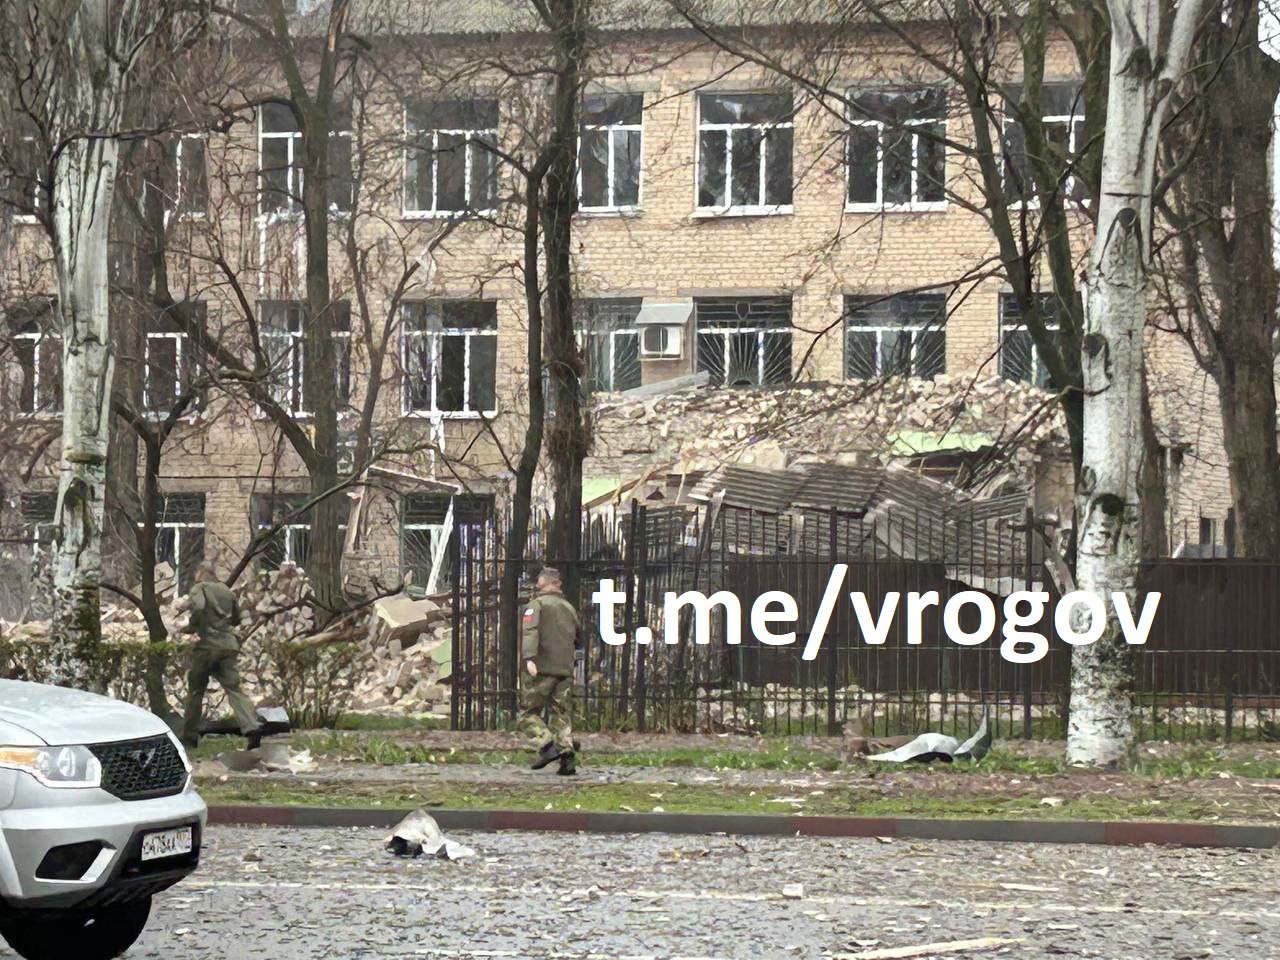 ВСУ обстреляли территорию у колледжа в Мелитополе, есть пострадавшие